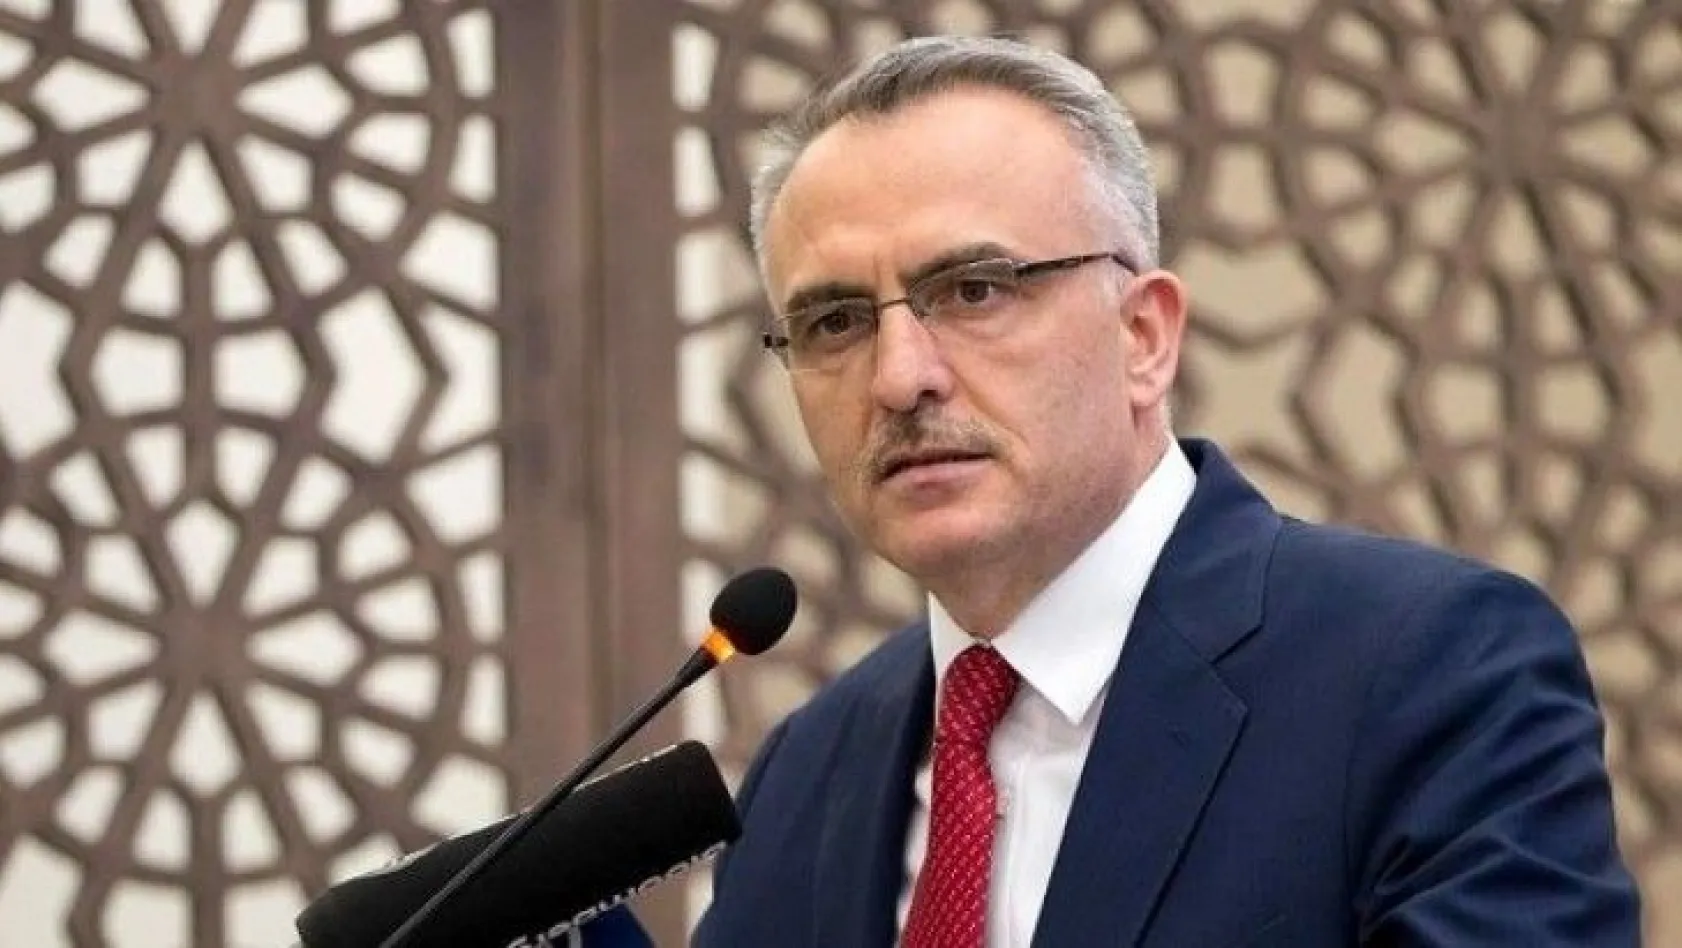 Merkez Bankası Başkanı Murat Uysal görevden alındı, yerine Naci Ağbal atandı